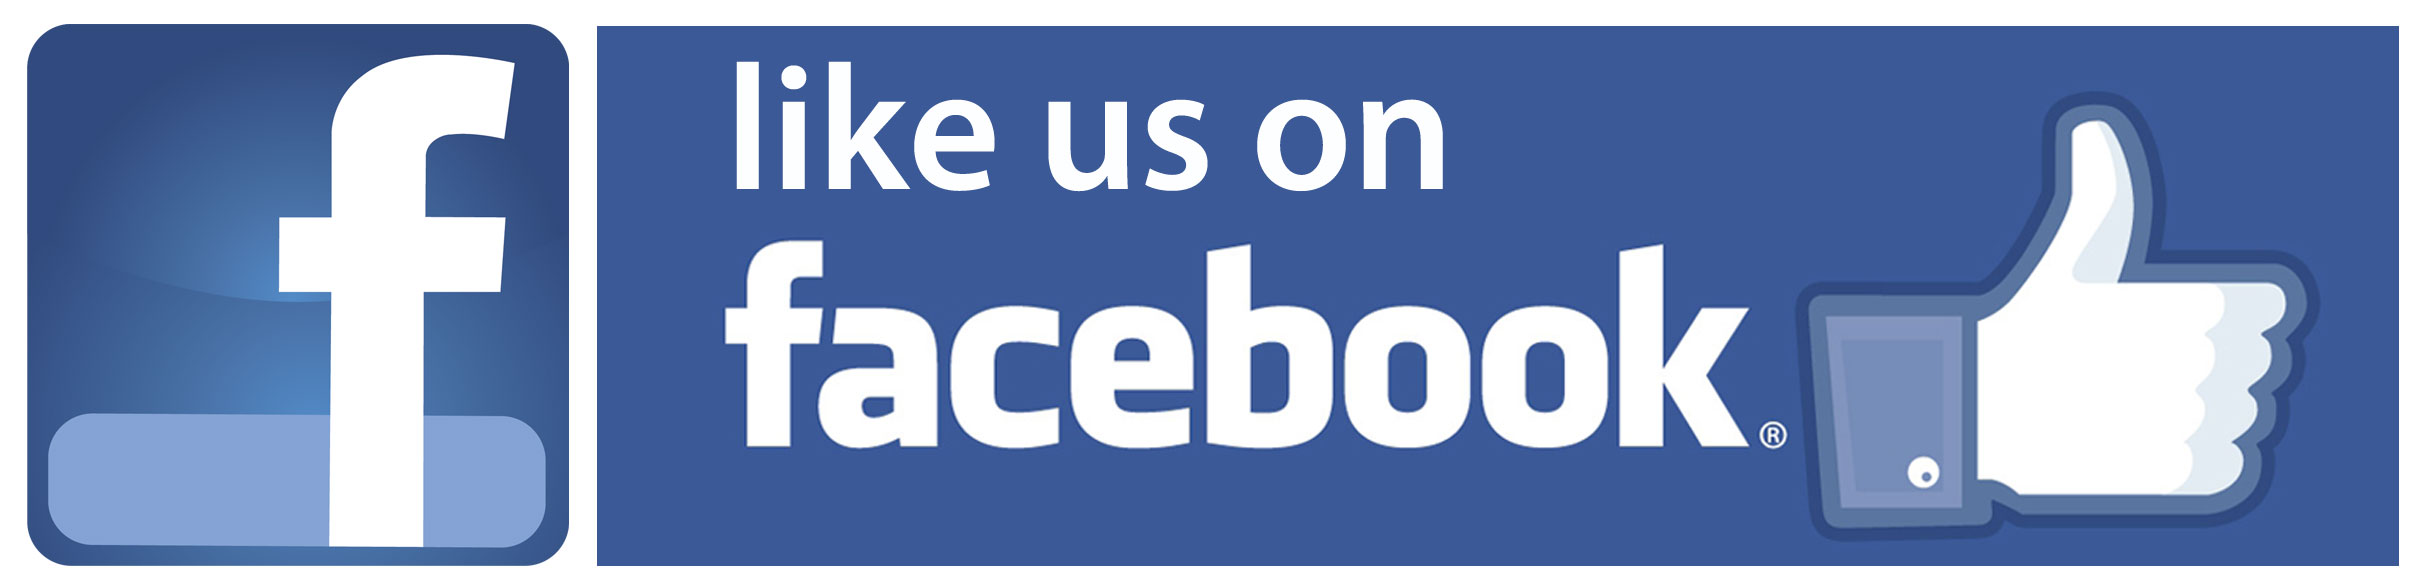 Facebook Like Us PNG Transparent Background, Free Download #38371